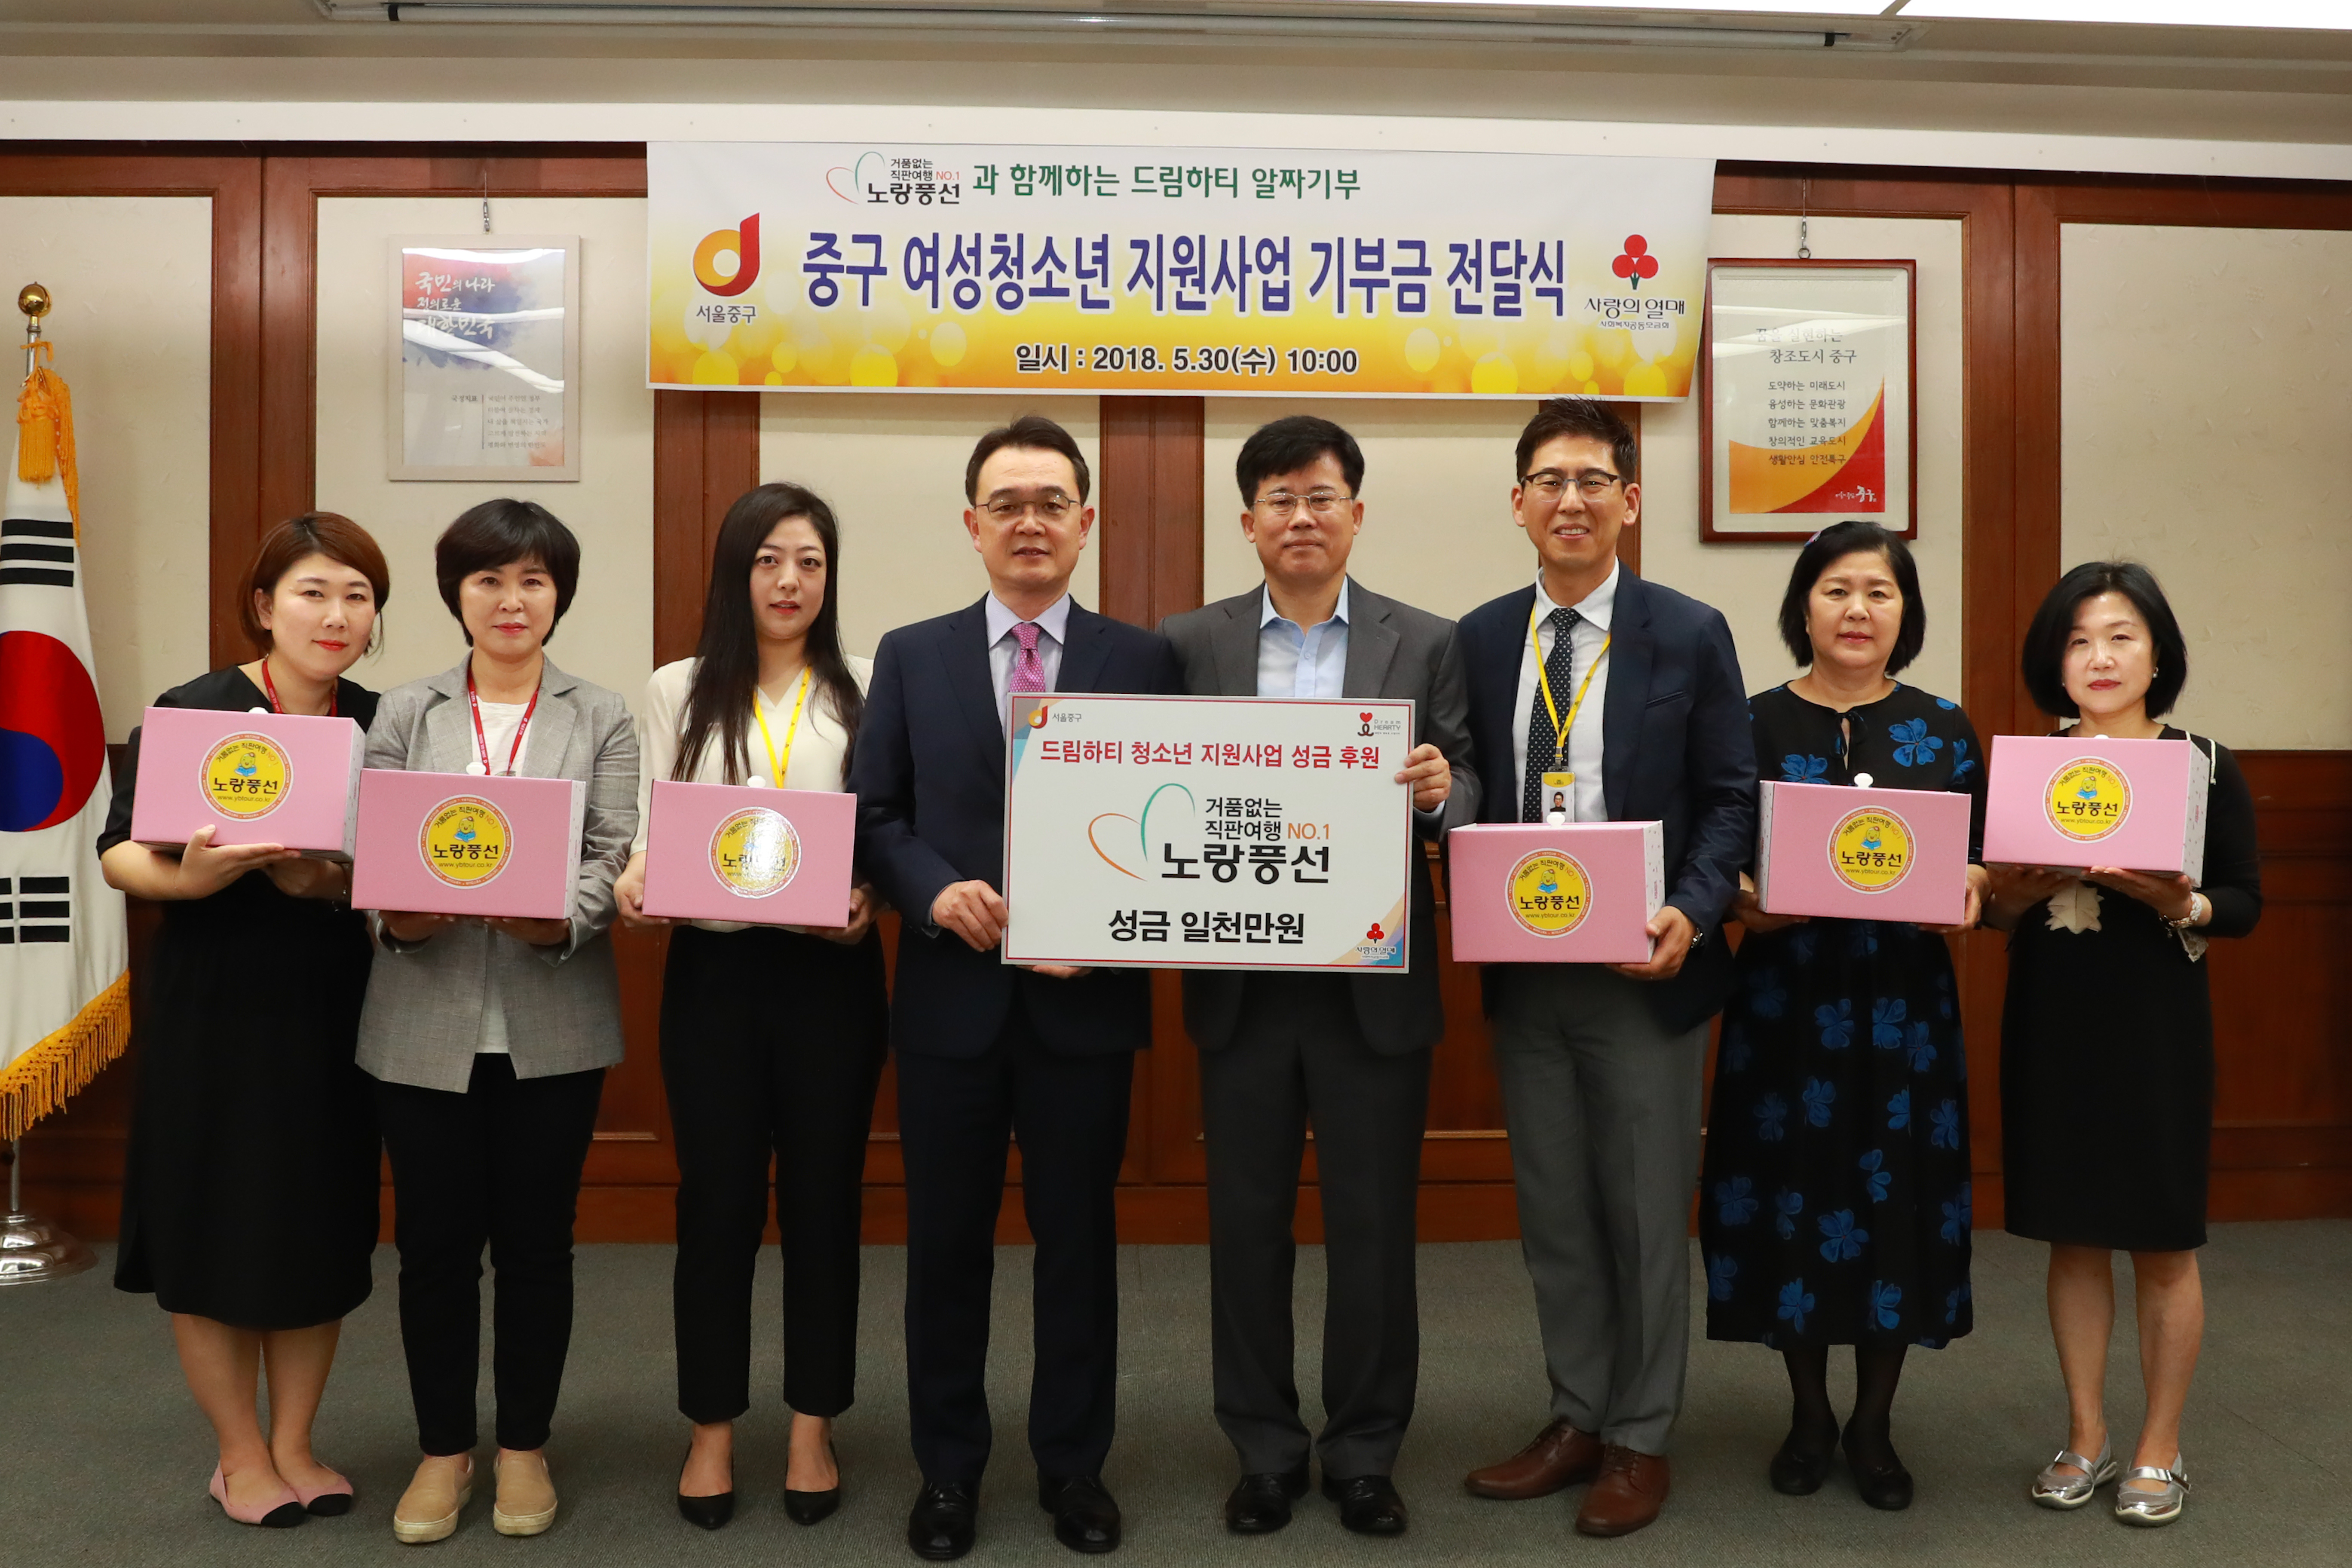 [파이낸셜뉴스] 노랑풍선, 서울 중구 지역 저소득층 여성청소년 위한 성금 전달